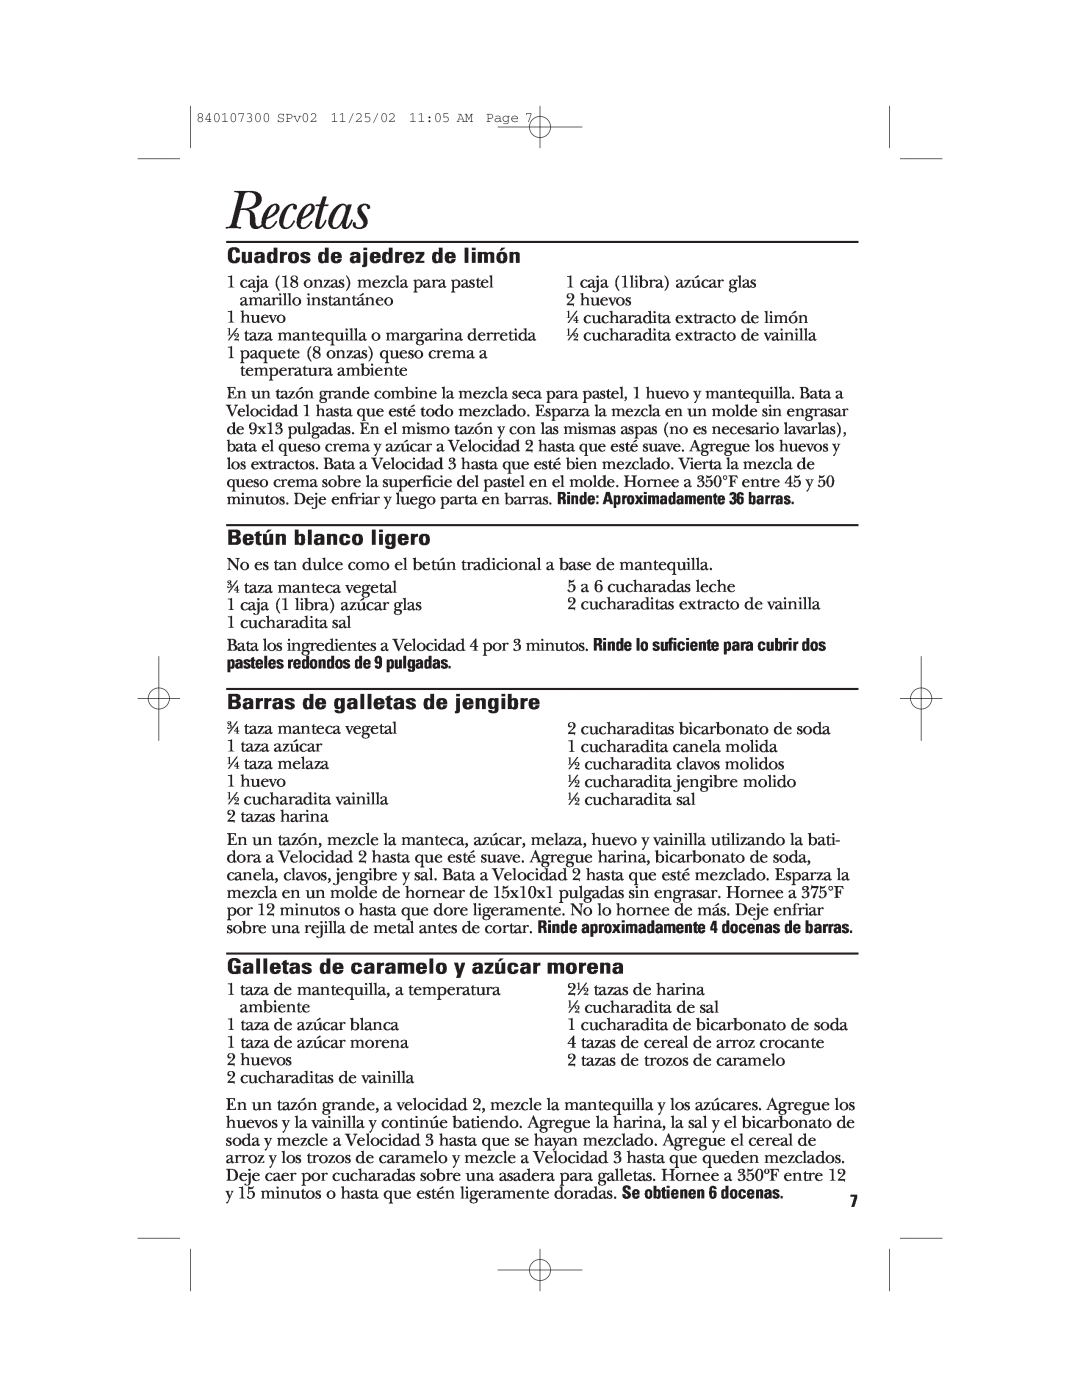 GE 106772, 840107300 manual Recetas, Cuadros de ajedrez de limón, Betún blanco ligero, Barras de galletas de jengibre 